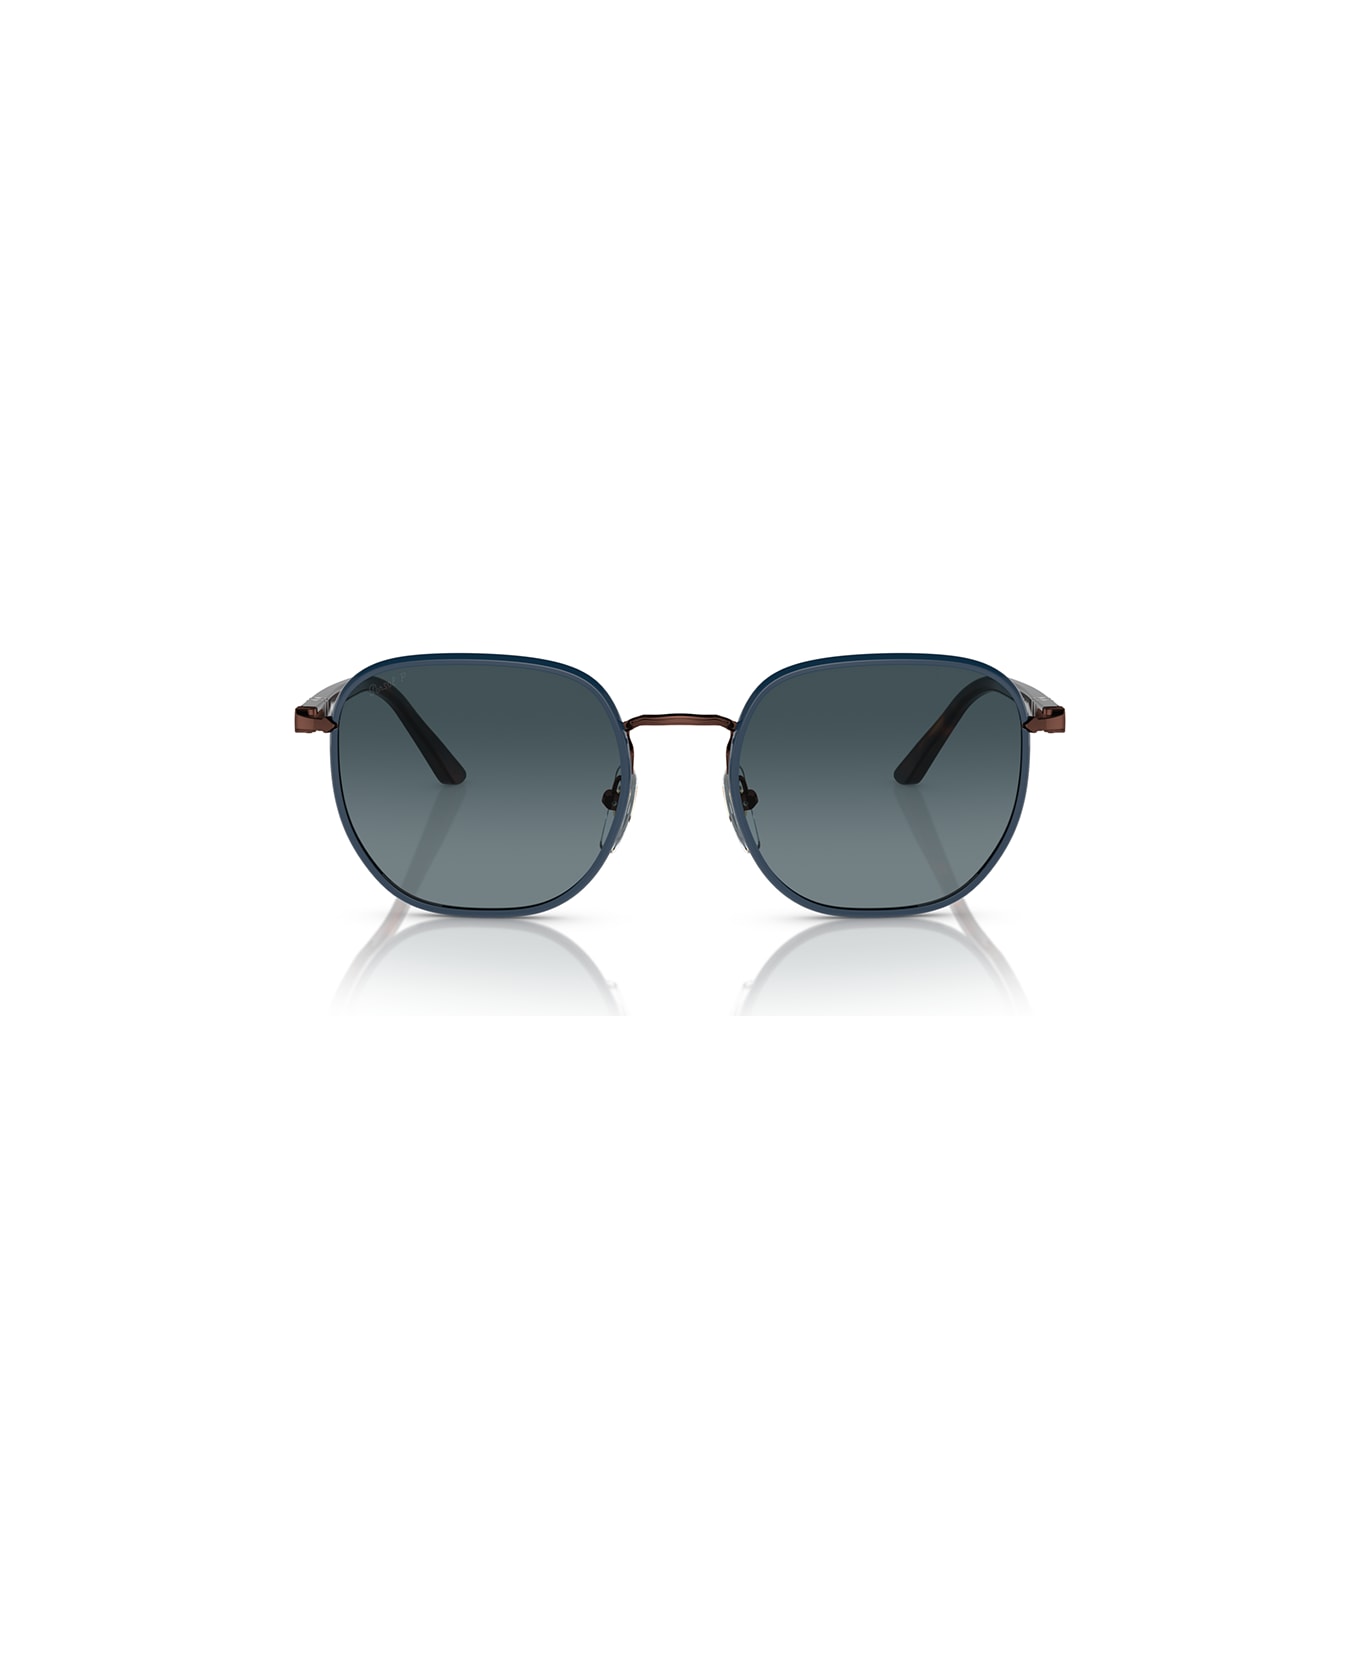 Persol Sunglasses - Marrone/Blu